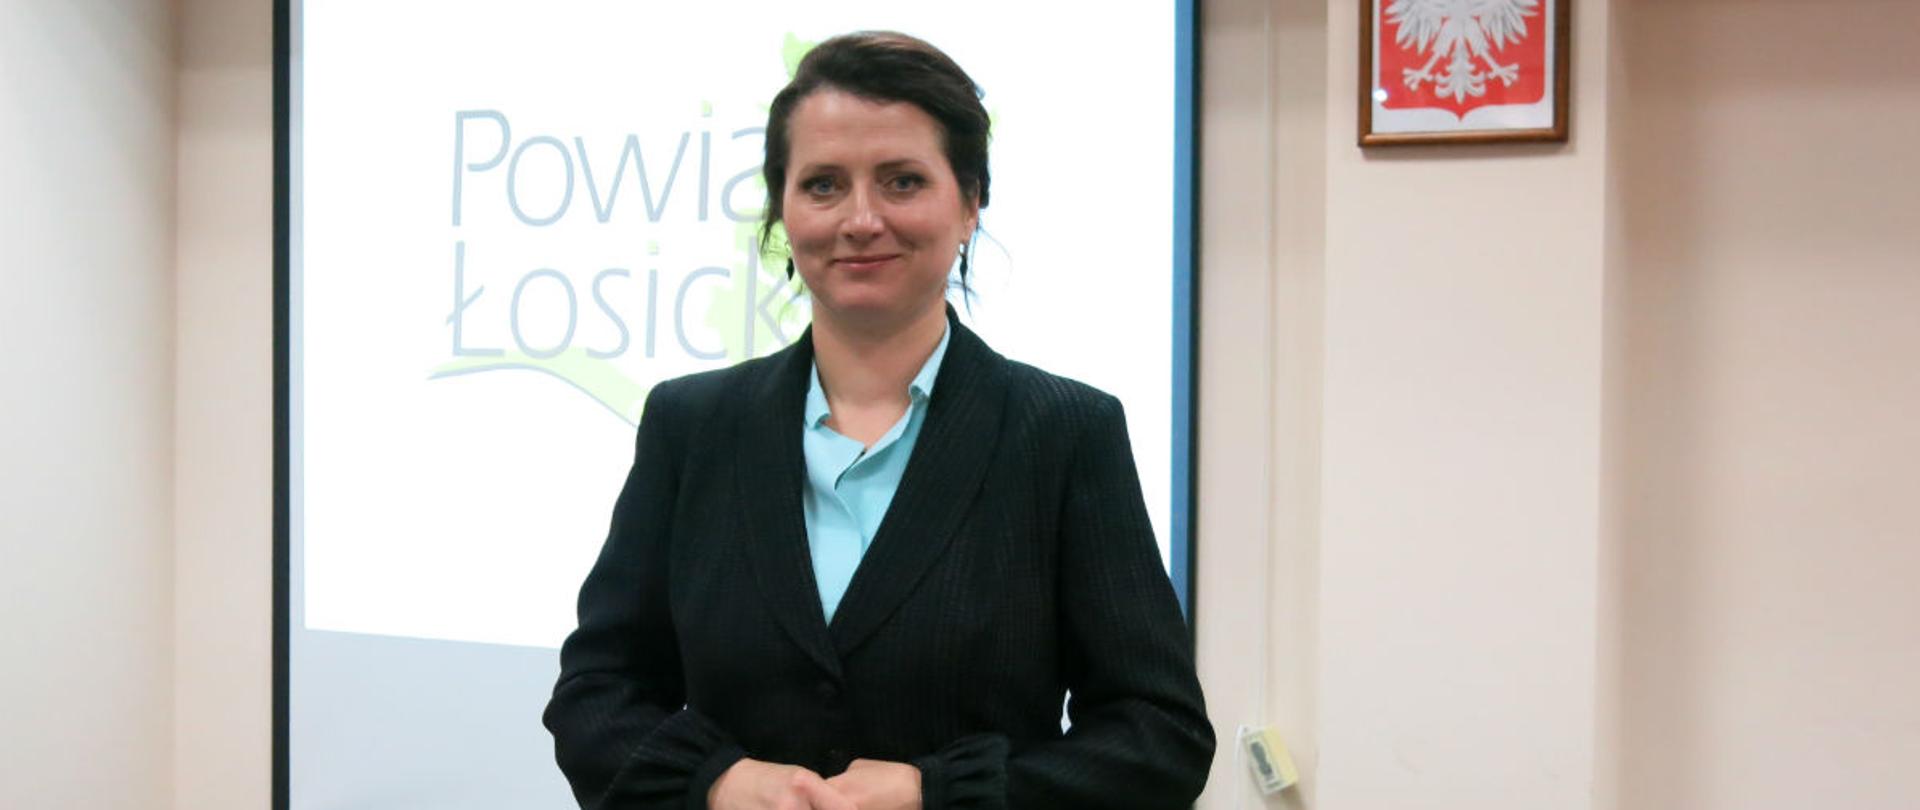 Przewodnicząca Rady Powiatu Łosickiego U. Sadowska